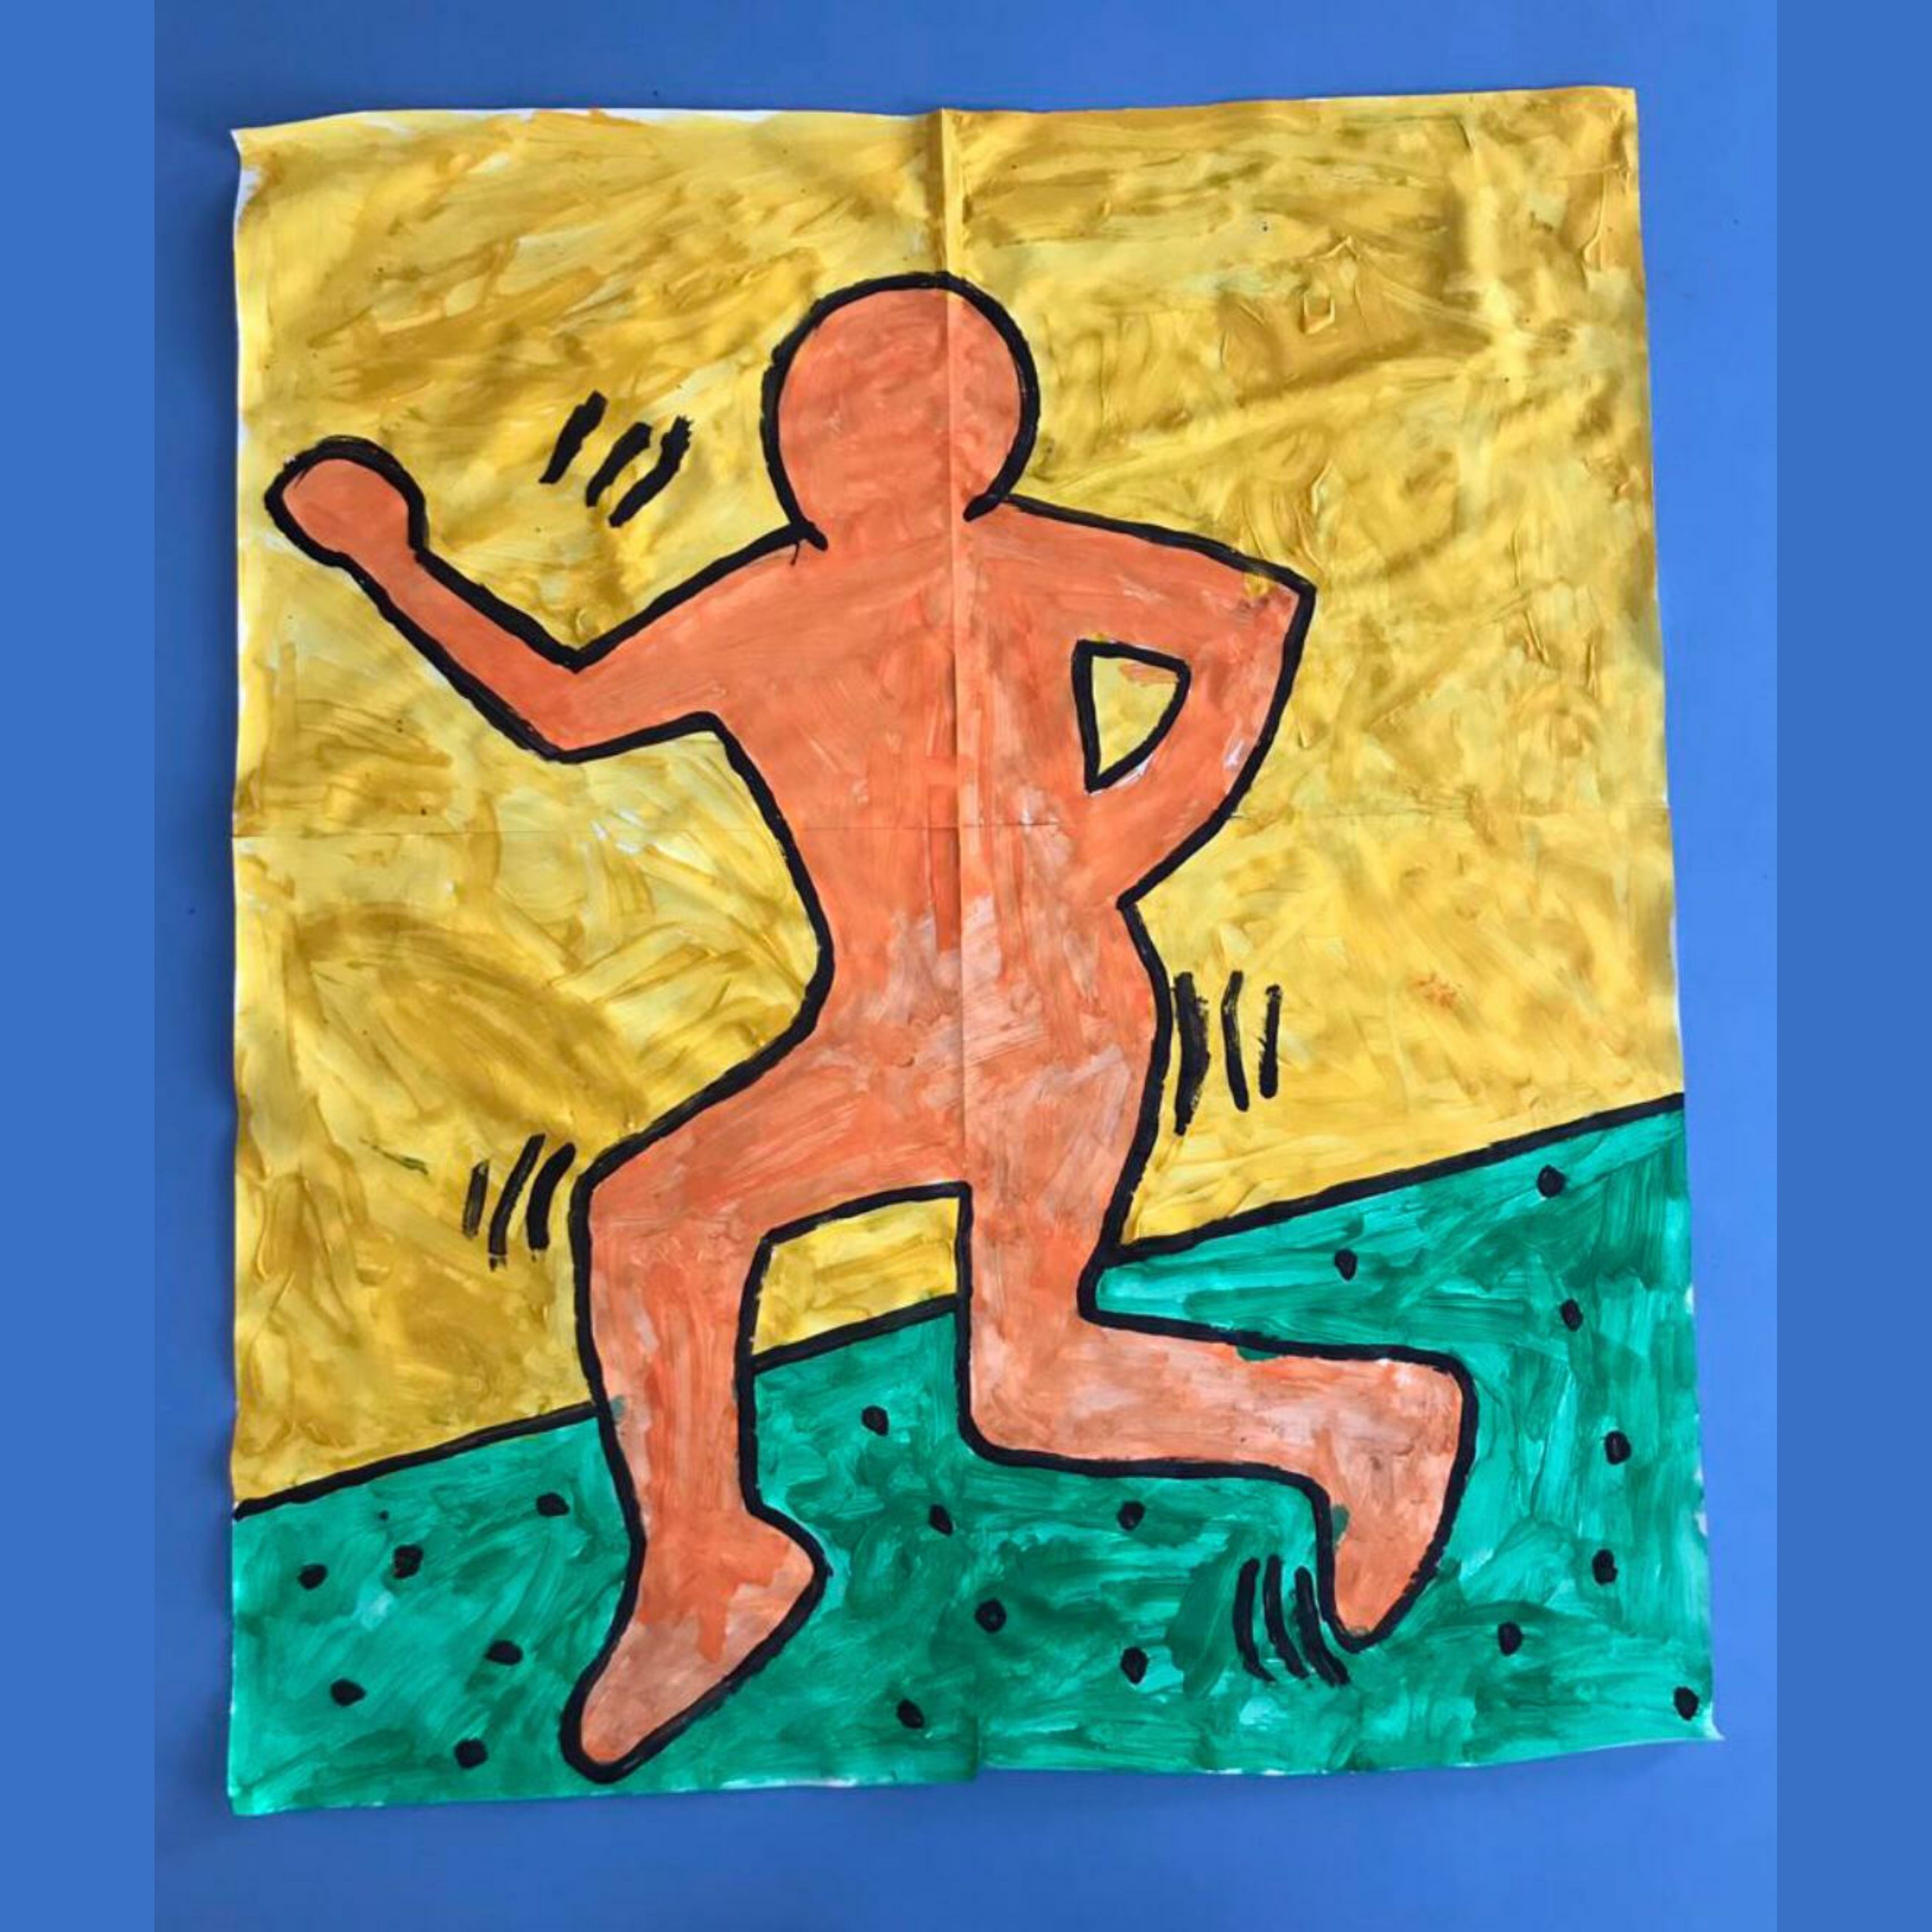 100 ideeën om te knutselen met peuter en kleuter. Als kind vond ik de kunstwerken van Keith Haring al fascinerend. De klas van mijn nichtje maakte deze Keith Haring in echt formaat. Een van de kinderen ging liggen, een ander kind tekende de omtrek van het kind op een groot vel. Dat werd vervolgens ingekleurd door alle kinderen samen. Ook leuk om met stoepkrijt te doen!